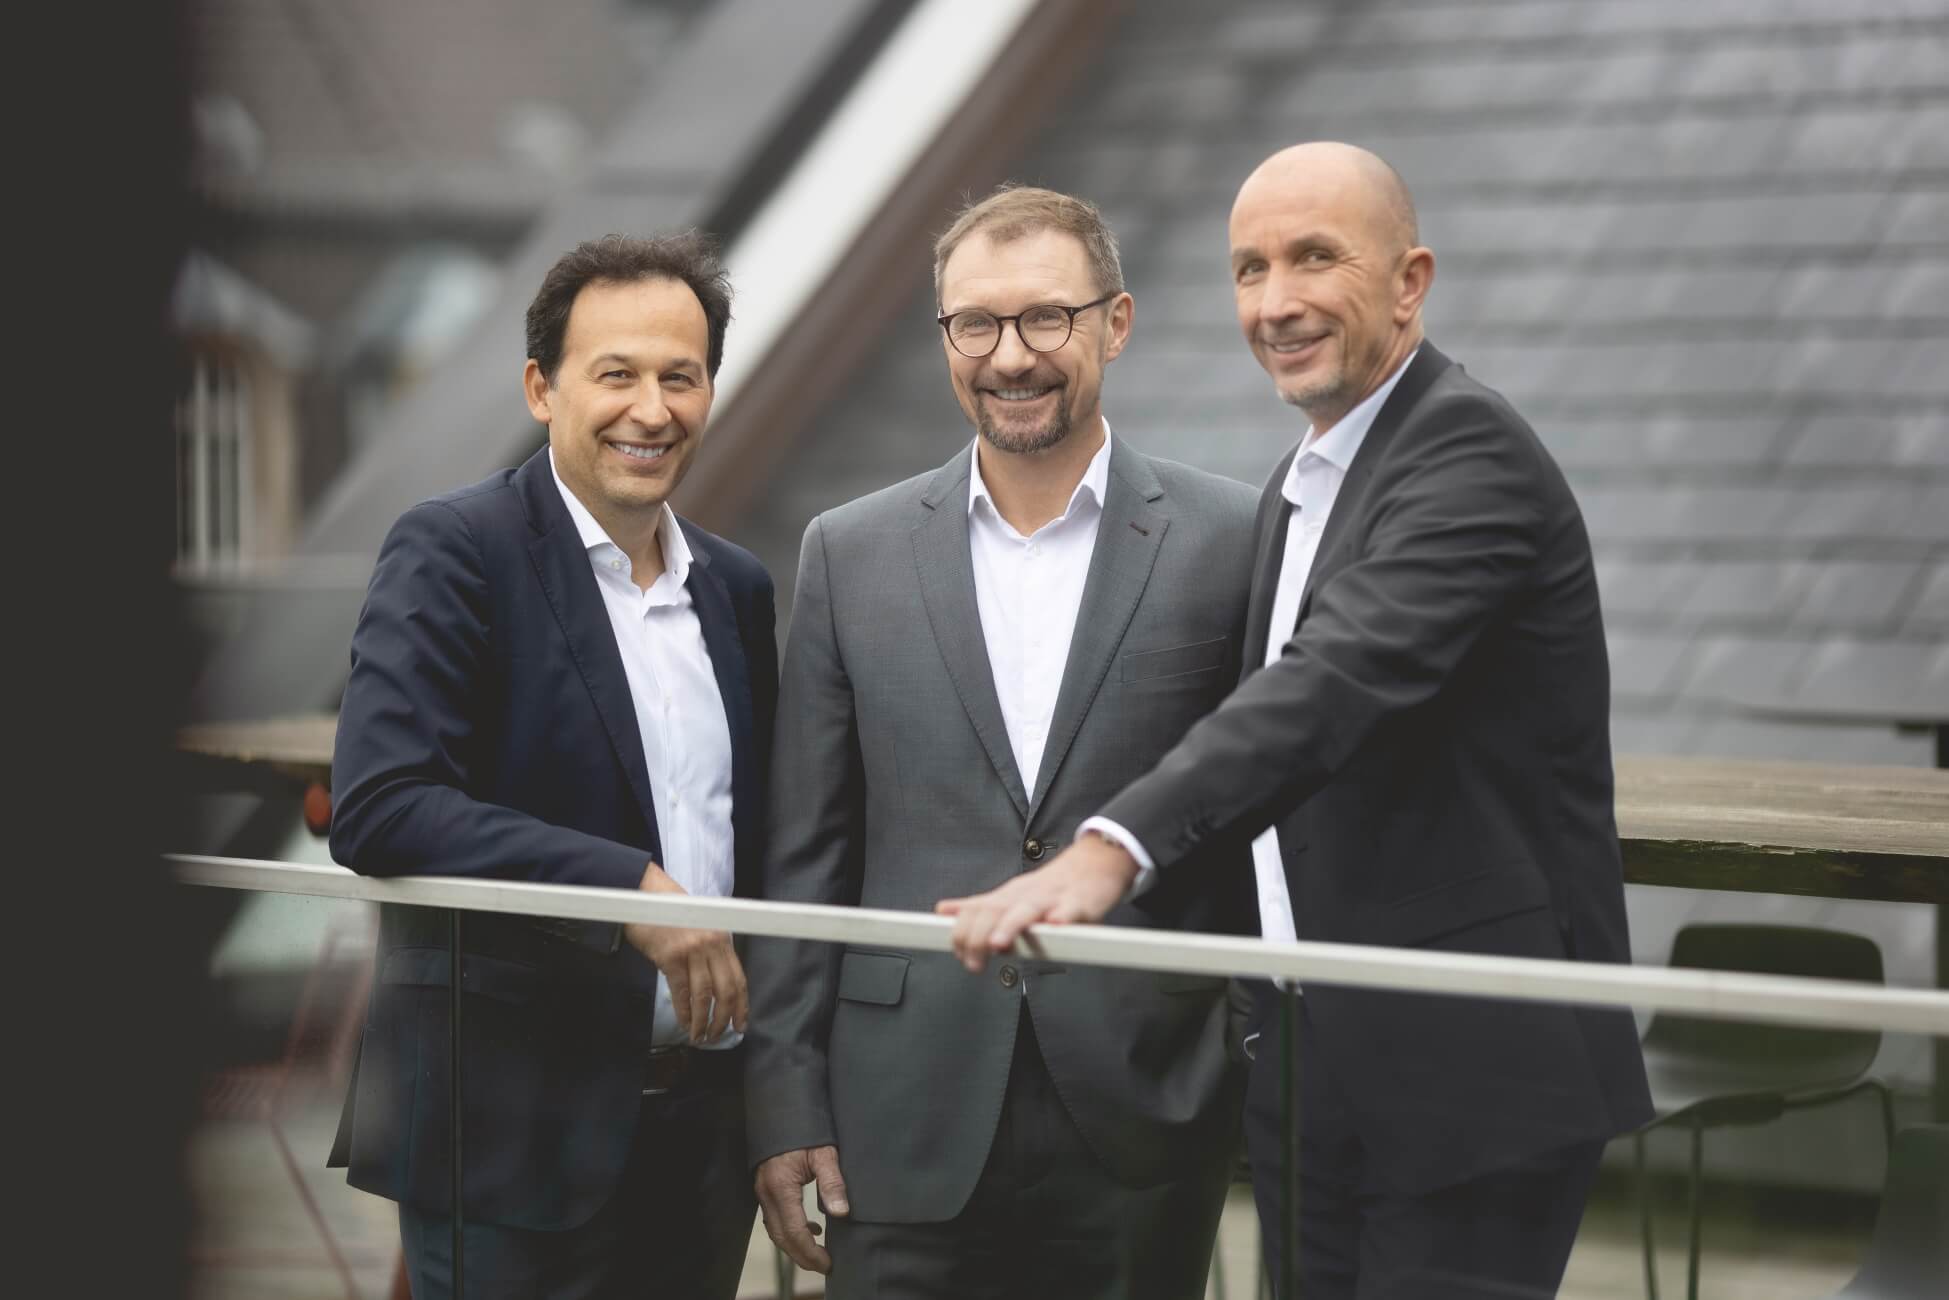 Alle 3 HERATAX Partner / Steuerberater Robert Heiss, Oliver Lindloff & Durica Radenovic auf Dachterrasse in Anzügen freundlich lachend